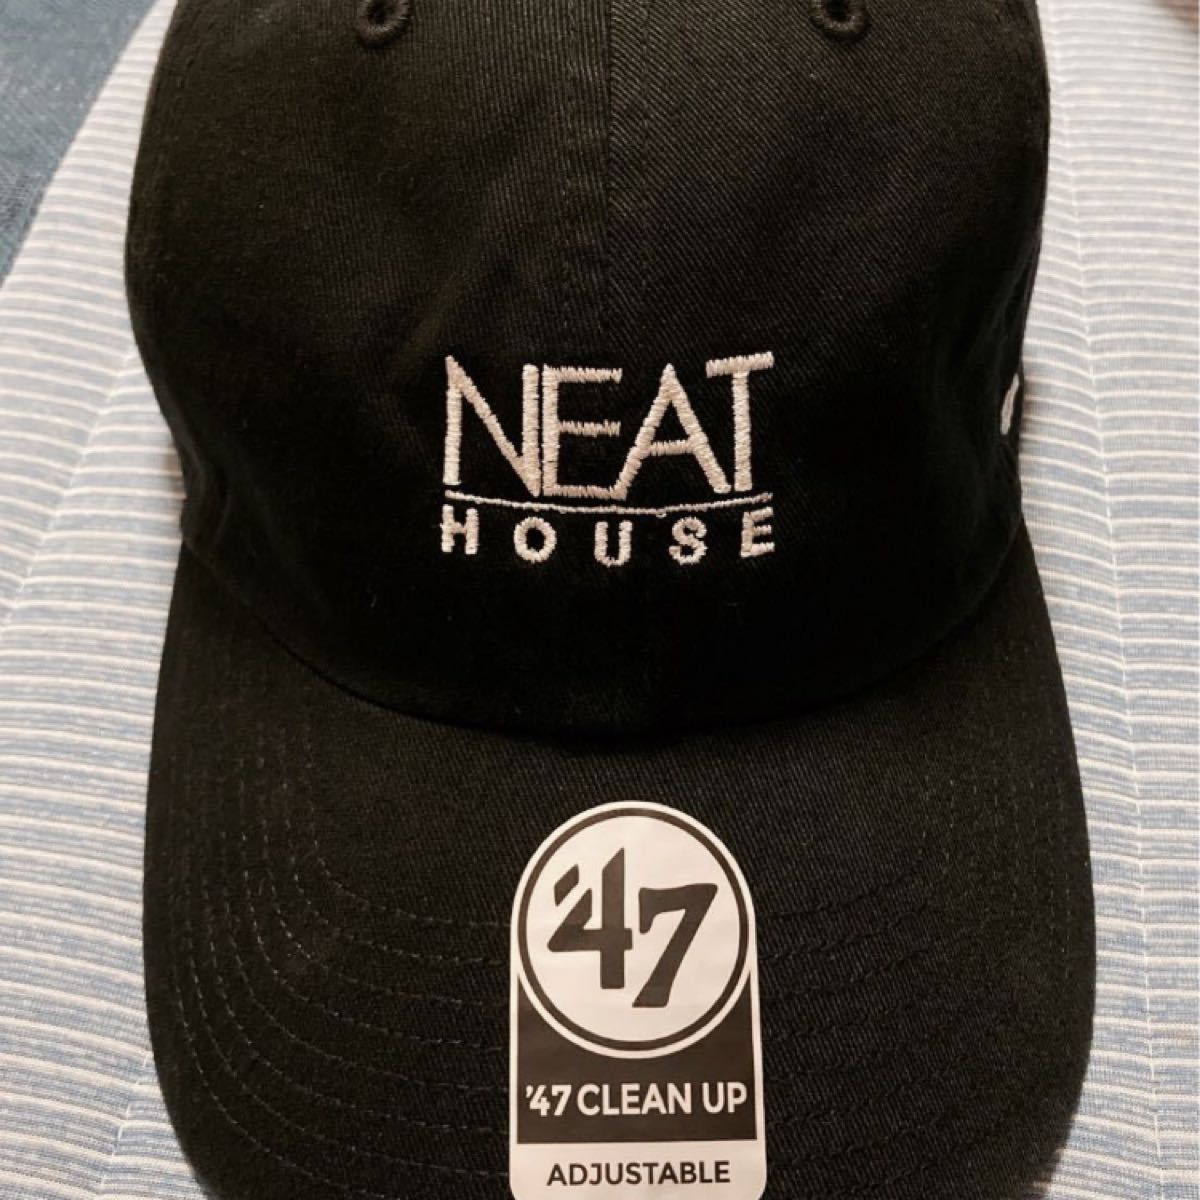 47 NEAT HOUSE ニート ブラック フォーティーセブン キャップ 帽子